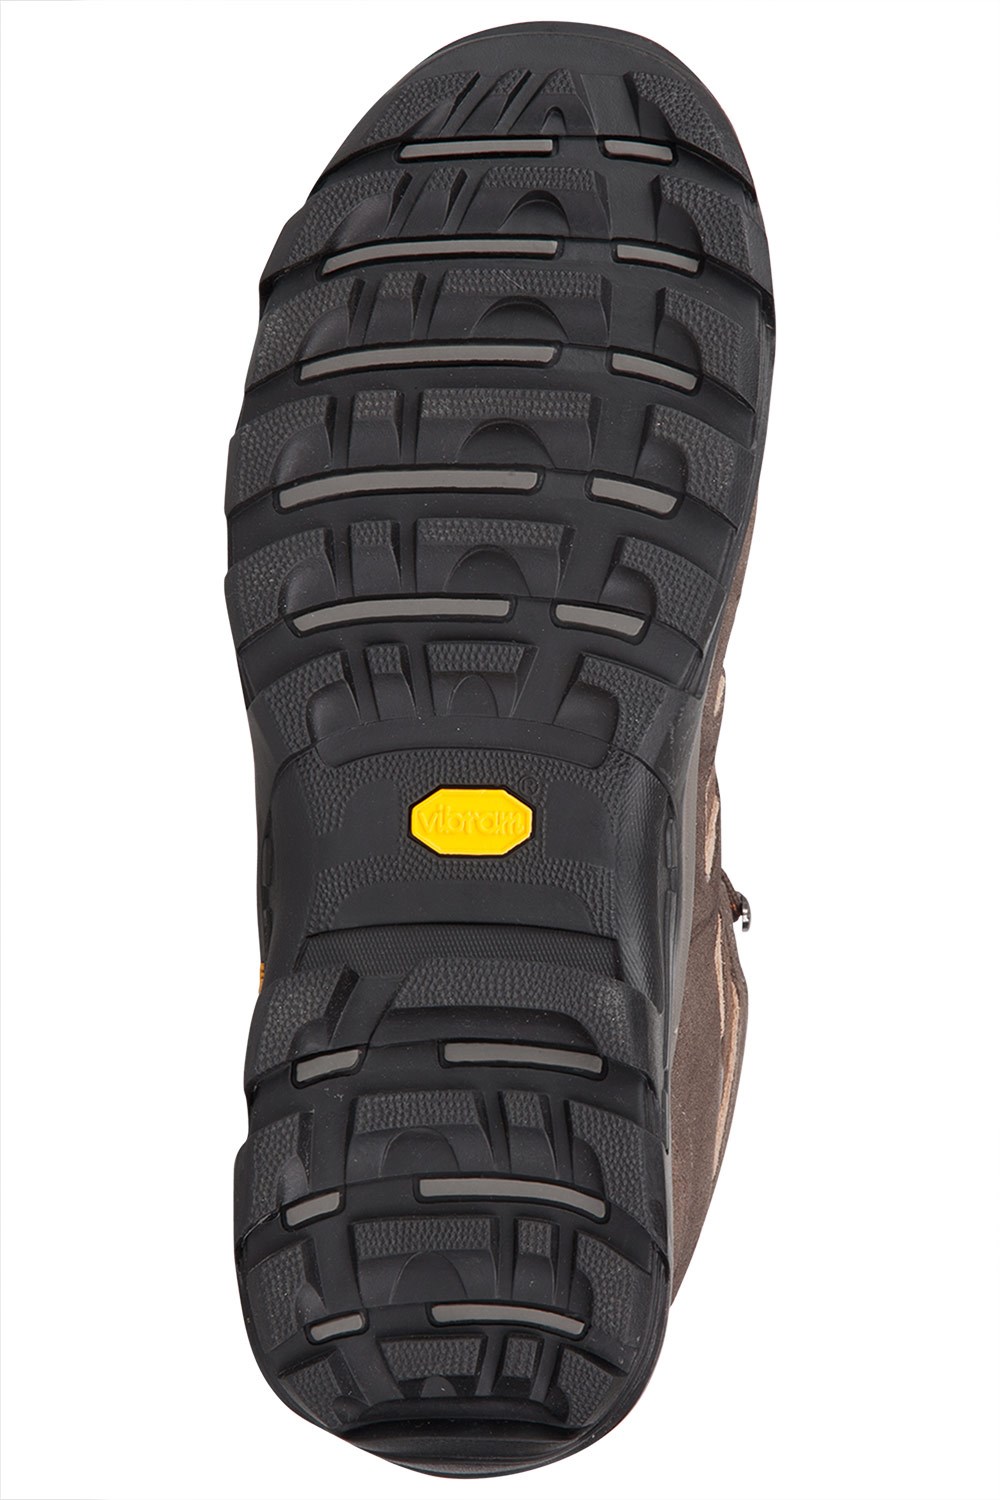 field waterproof vibram shoe